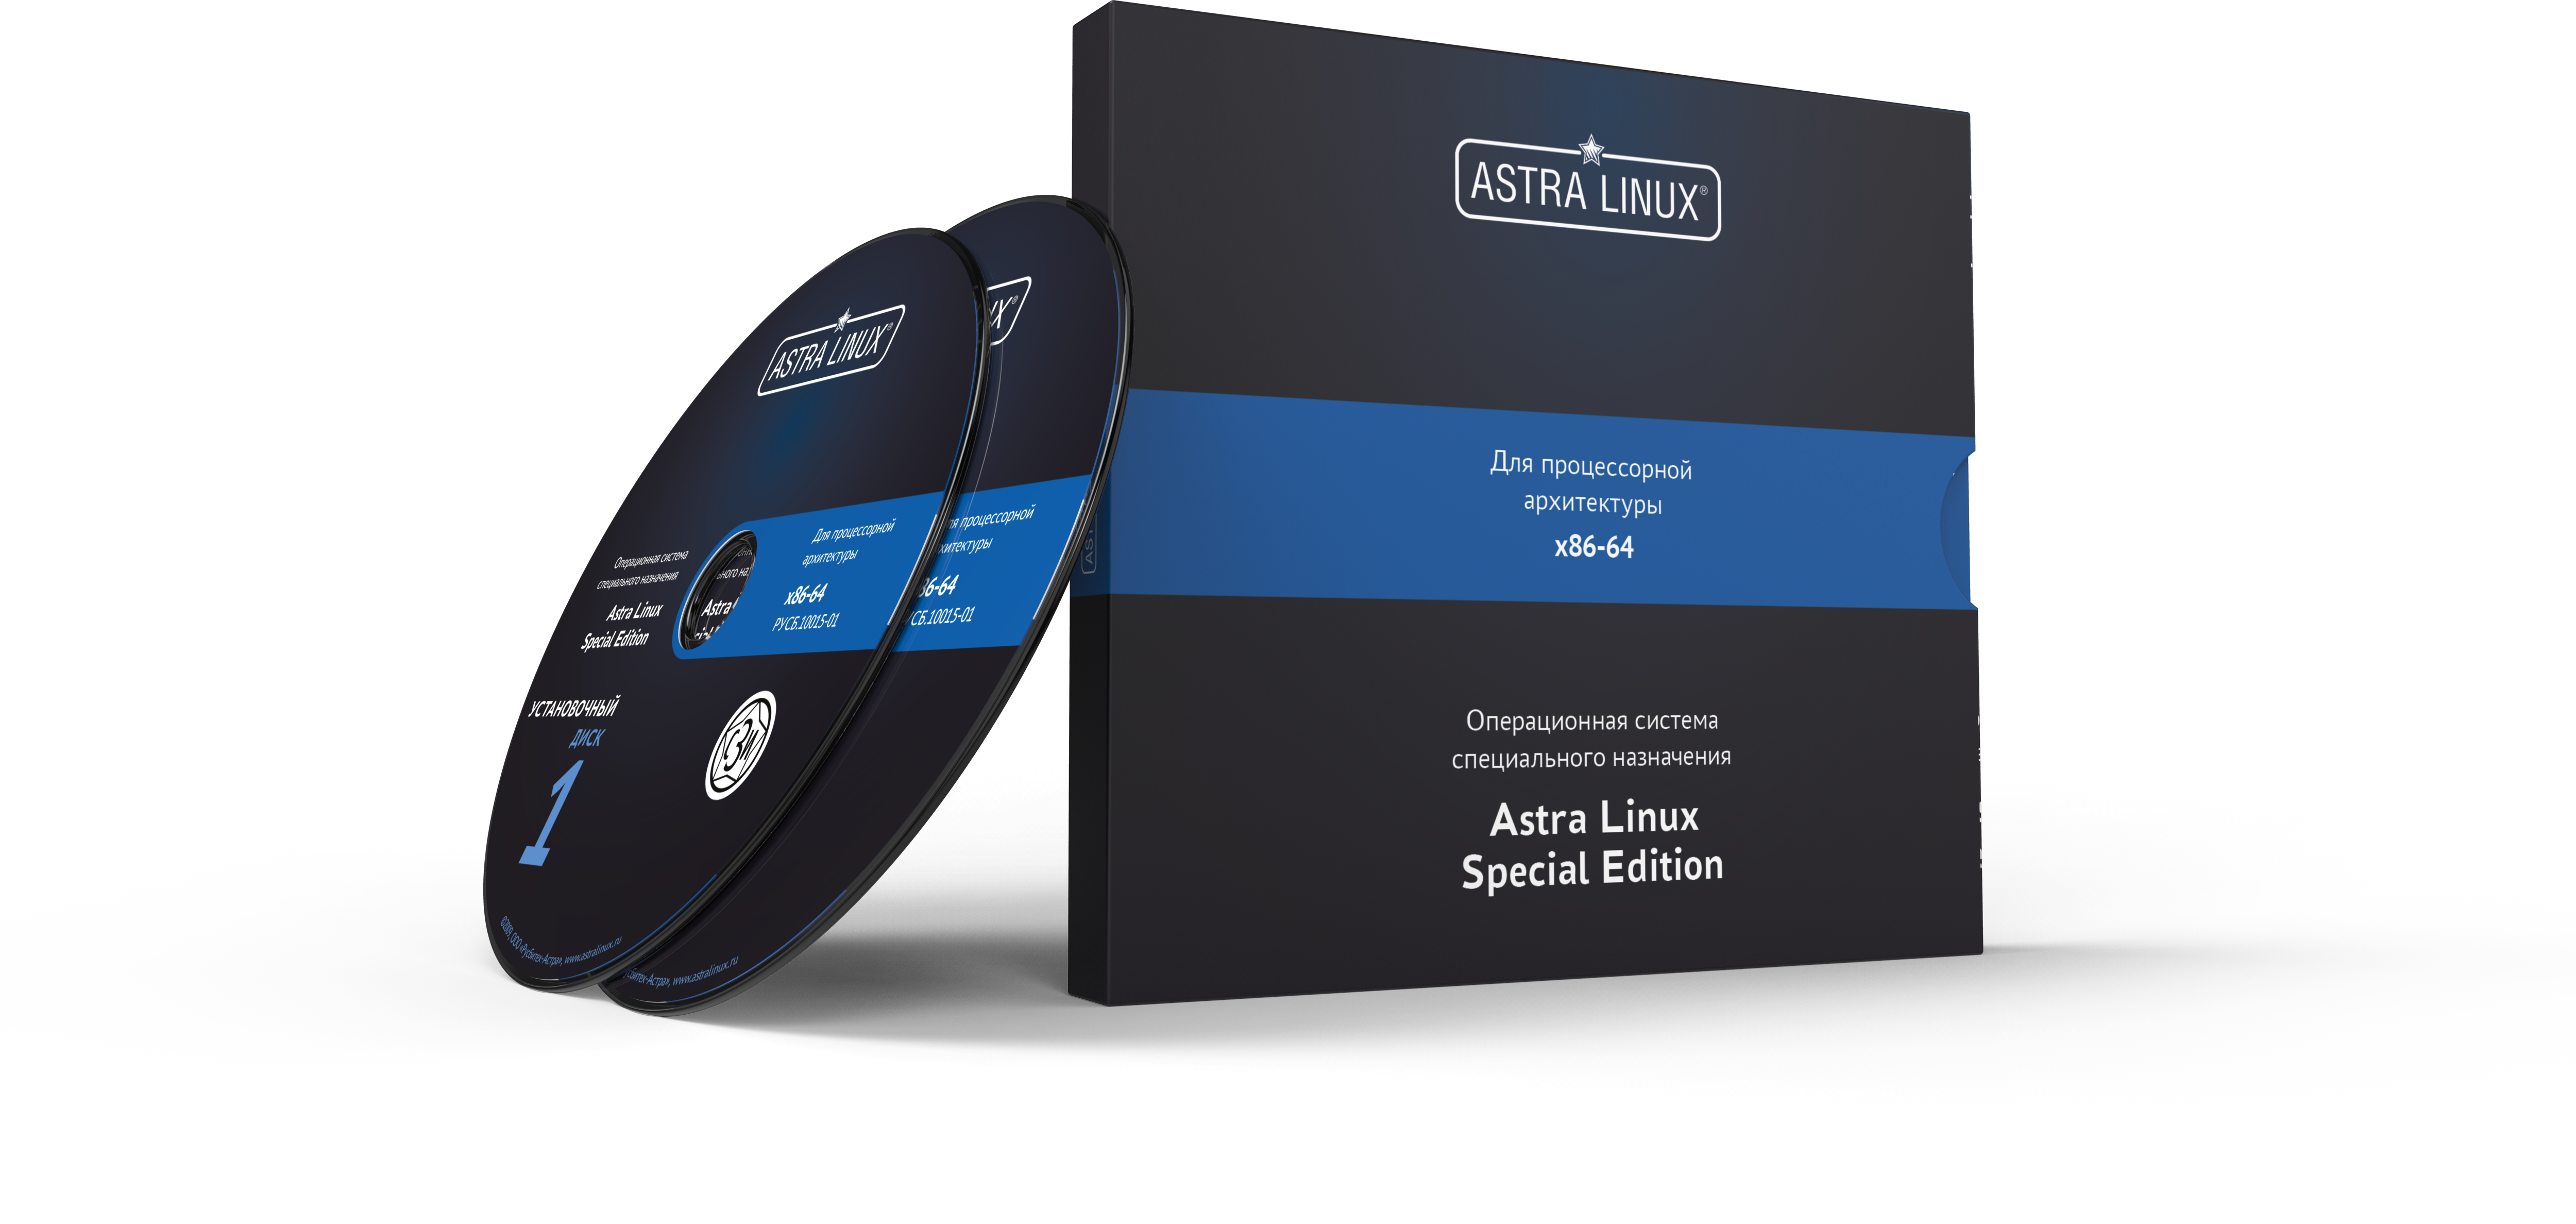 Astra Linux Special Edition 1.7 - Смоленск, "Максимальный", электронный, ФСТЭК, на 24 мес., ТП "Привилегированная" на 24 мес.